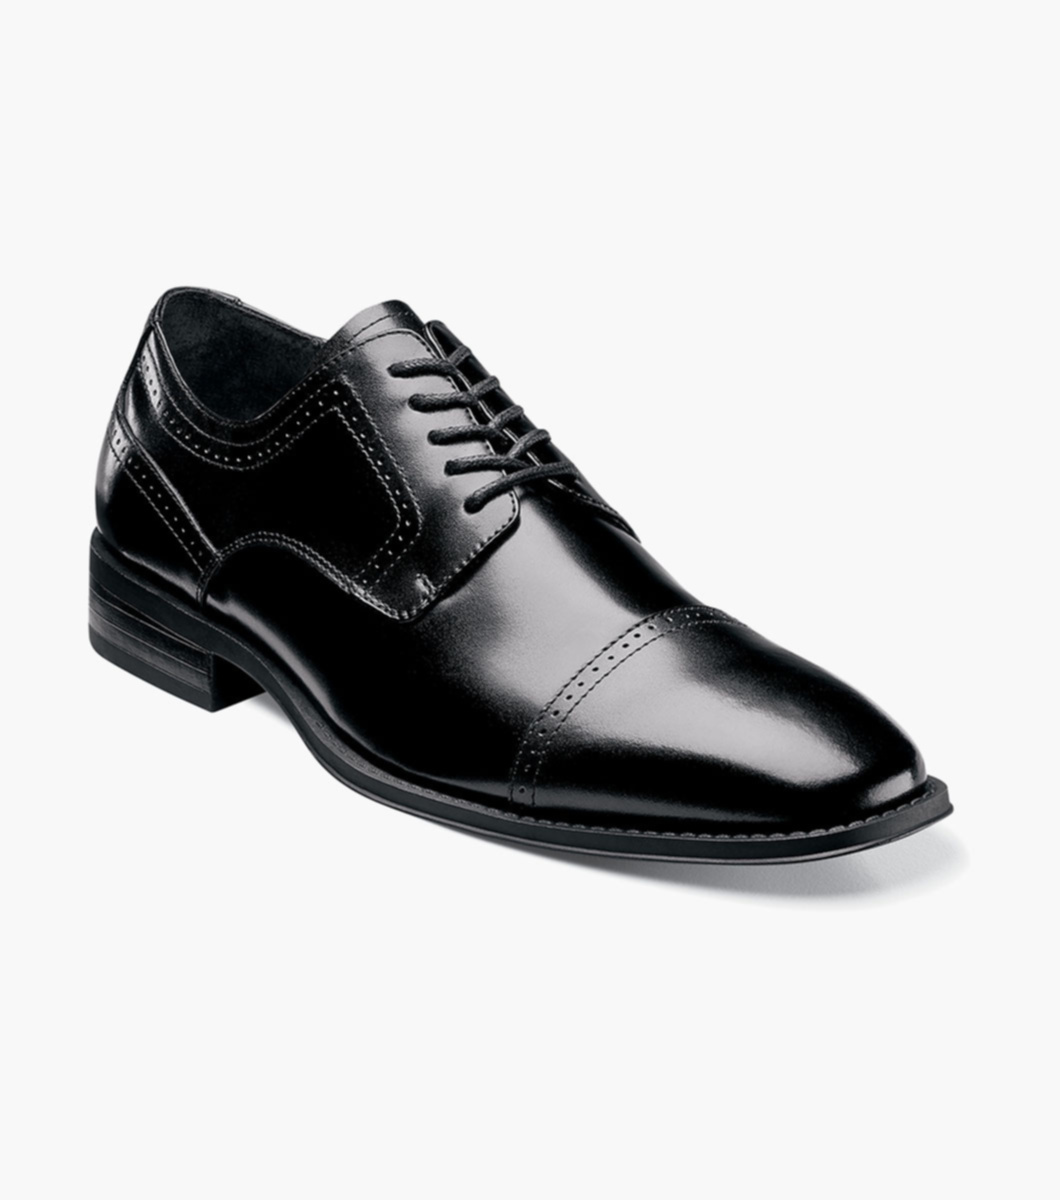 Waltham Cap Toe Oxford Men's Dress Shoes | Stacyadams.com